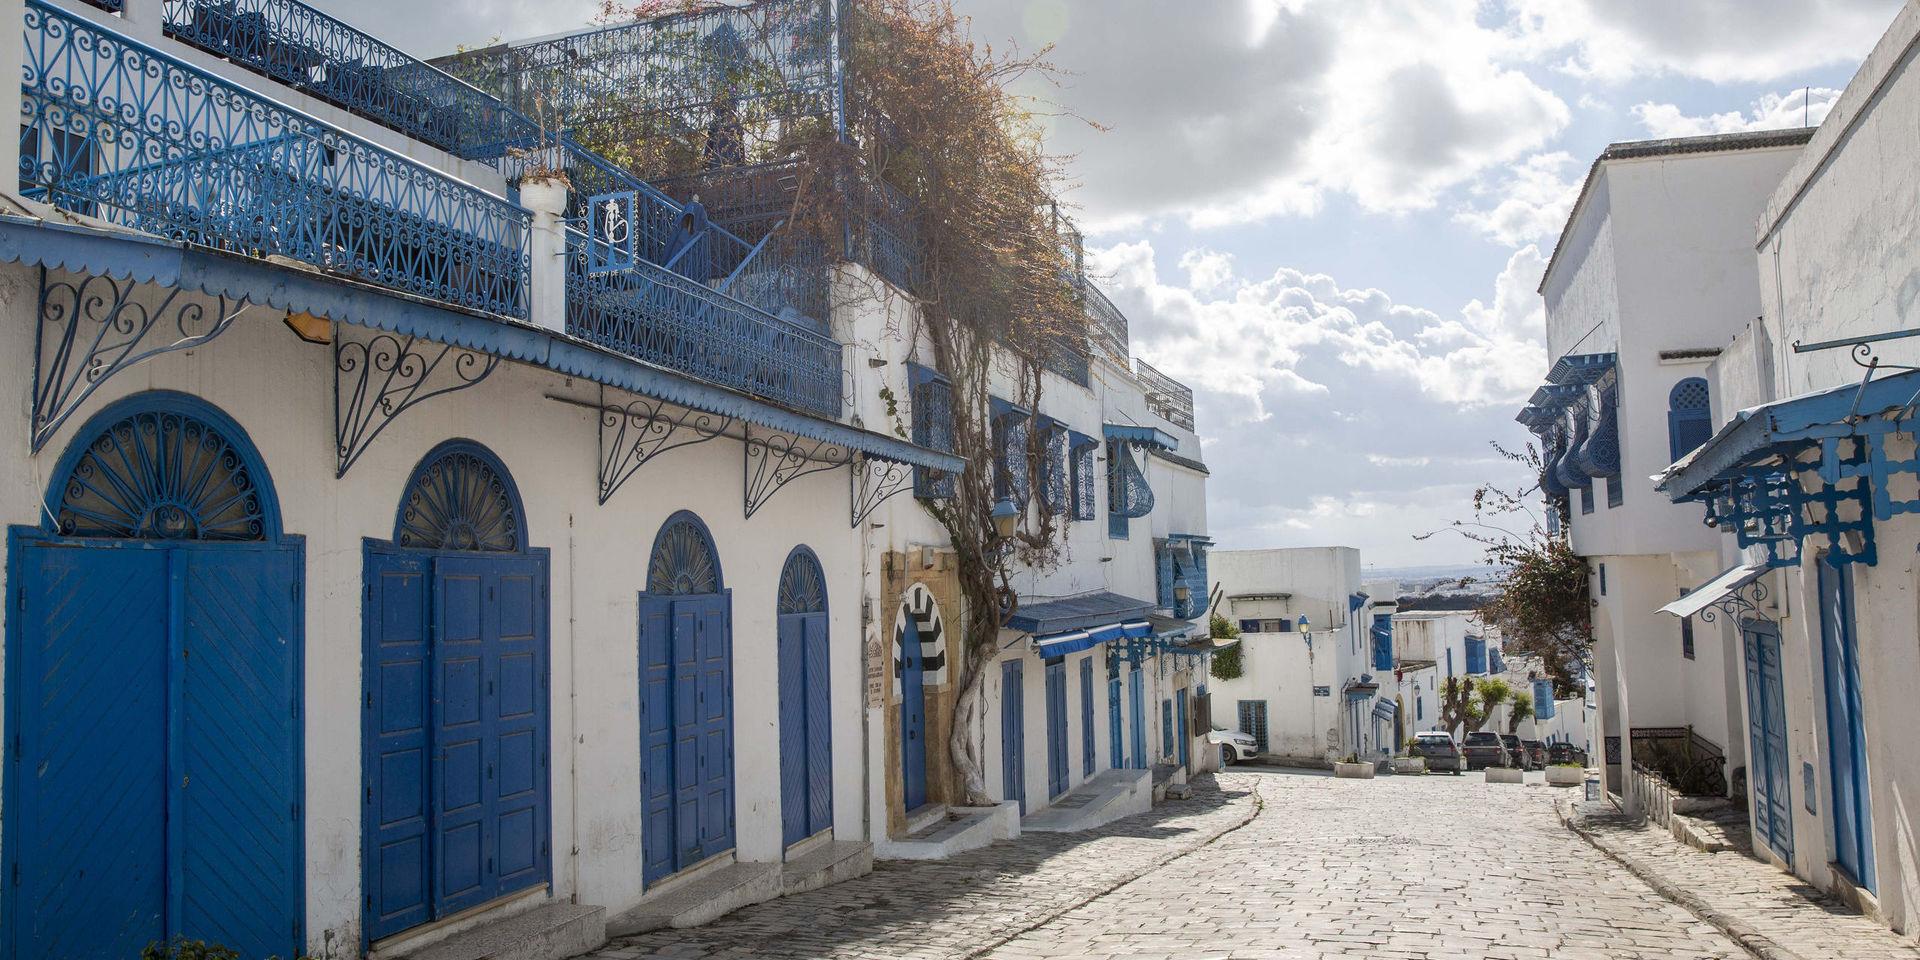 Gatorna är tomma i Sidi Bou Said utanför Tunisiens huvudstad. Myndigheter skärper regler och hotar att åtala dem som sprider coronasmitta för dråp.